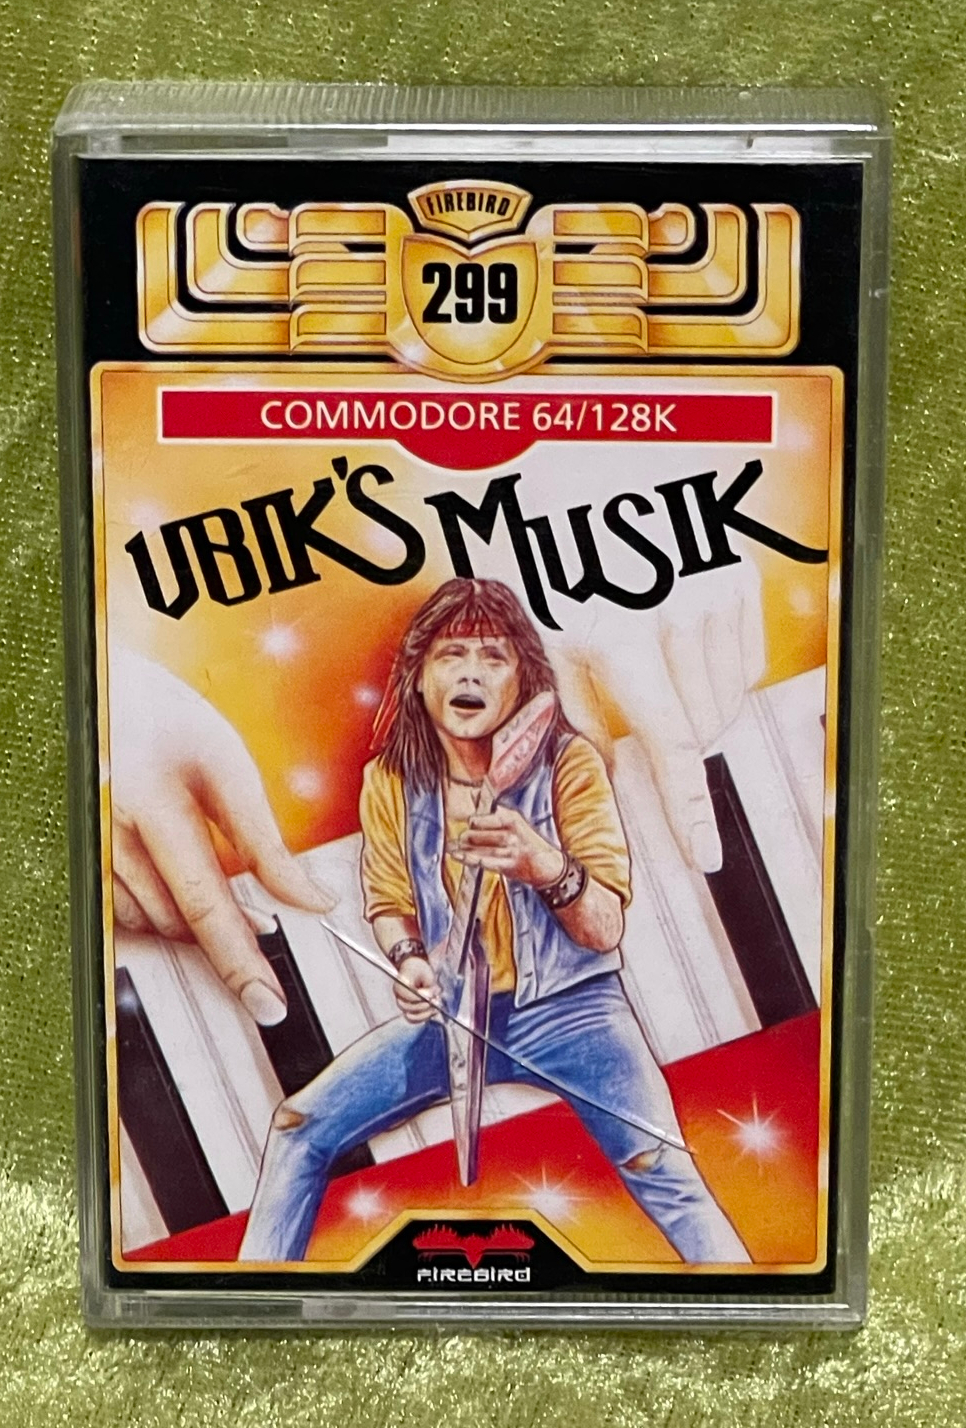 Ubik's Musik